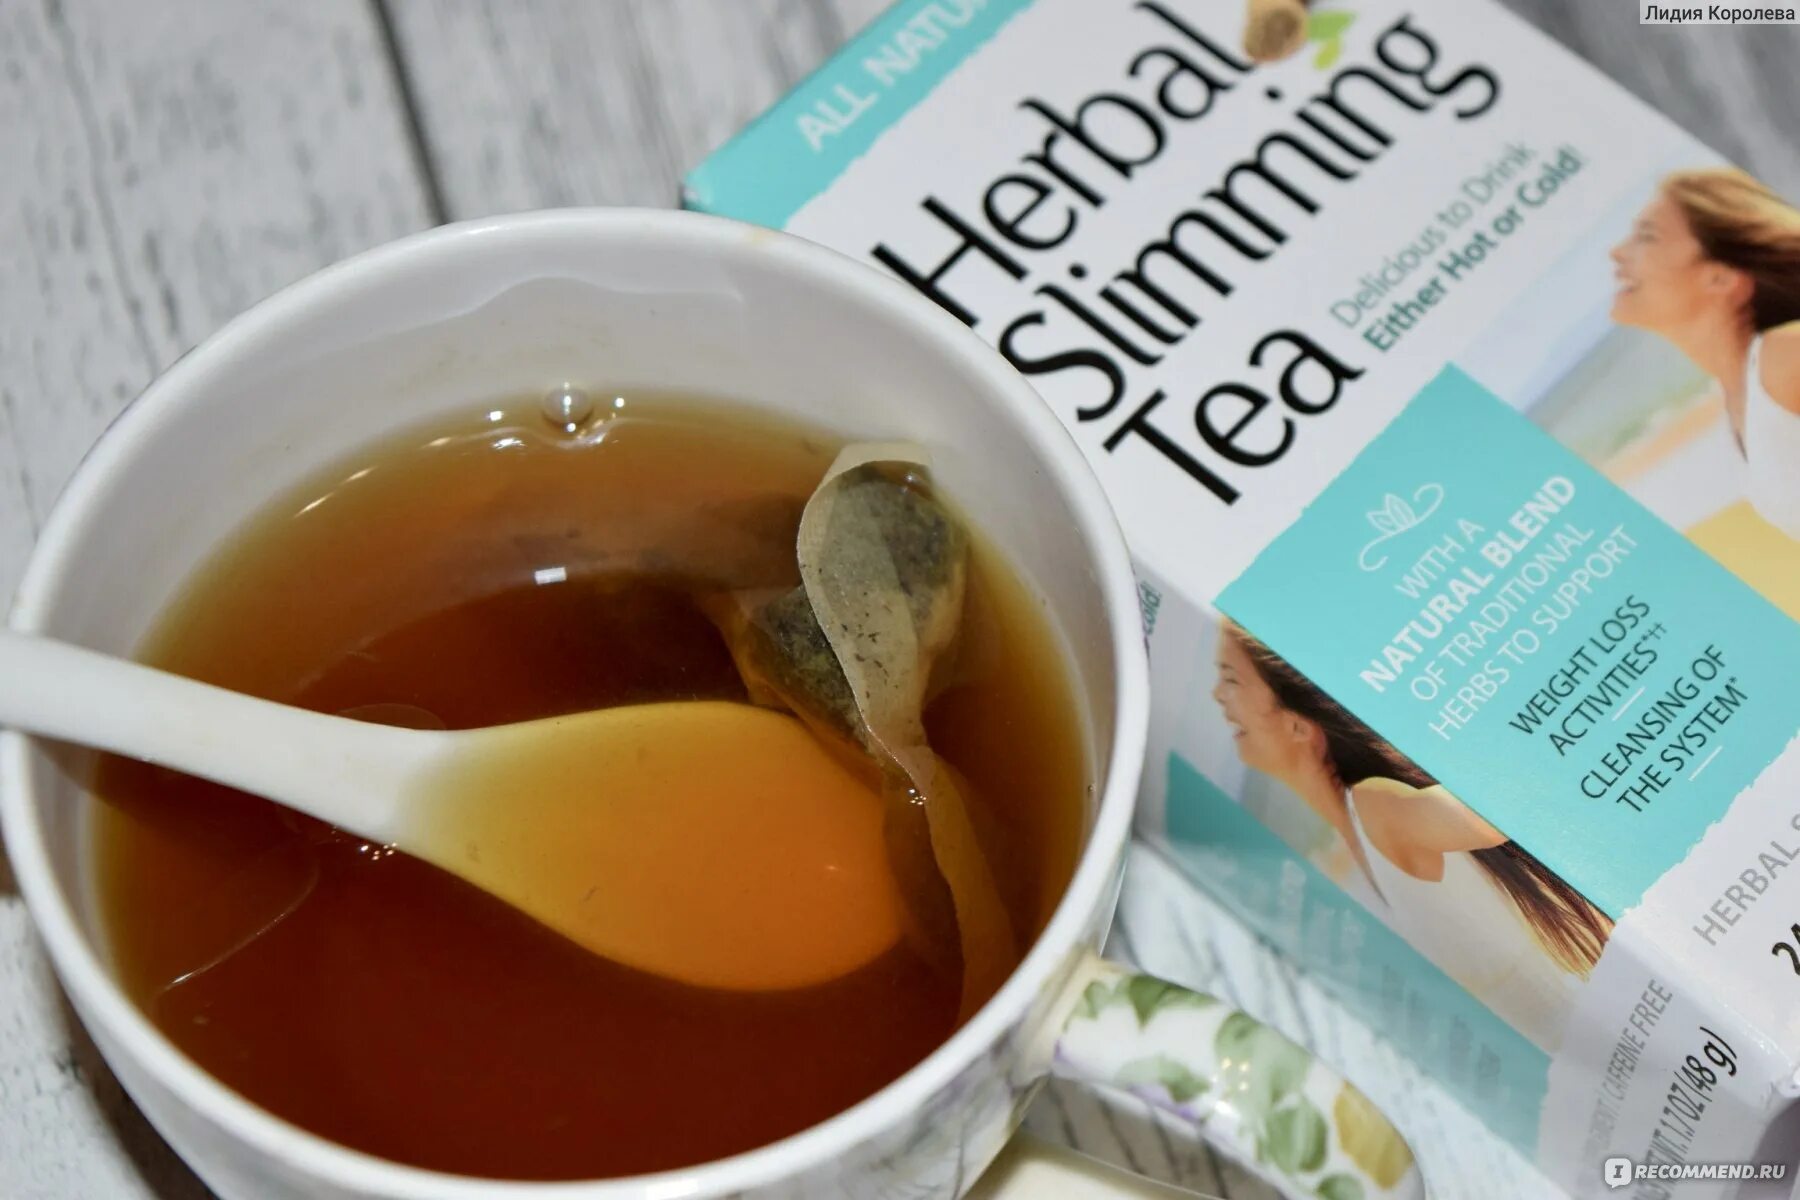 Herbal Slimming Tea инструкция по применению на русском языке.